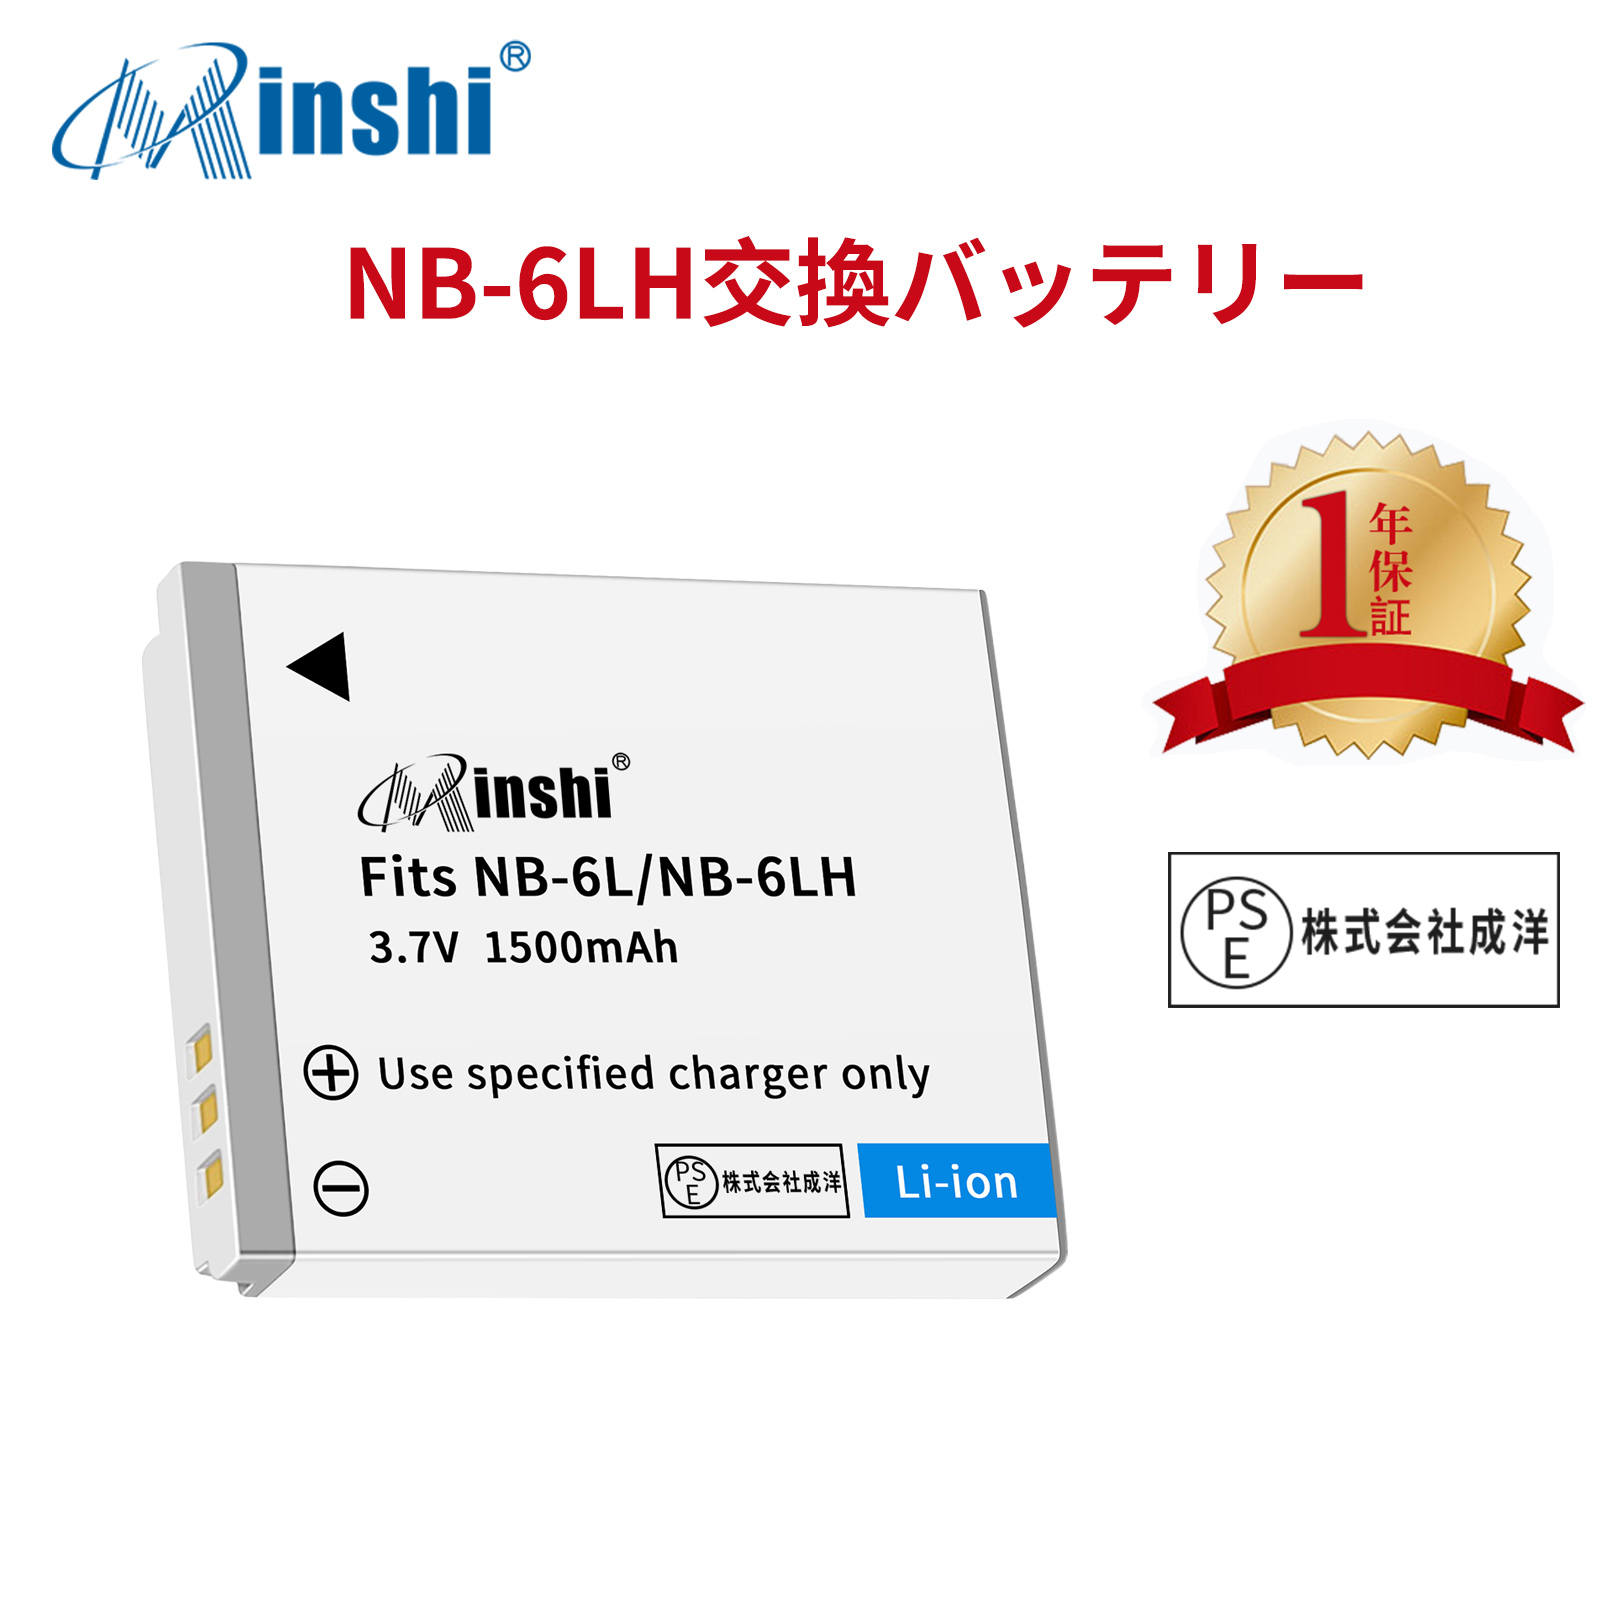 【1年保証】minshi Canon IXUS 105 200 IS NB-6L【1500mAh 3.7V】PSE認定済 高品質 NB-6LH 交換用バッテリー